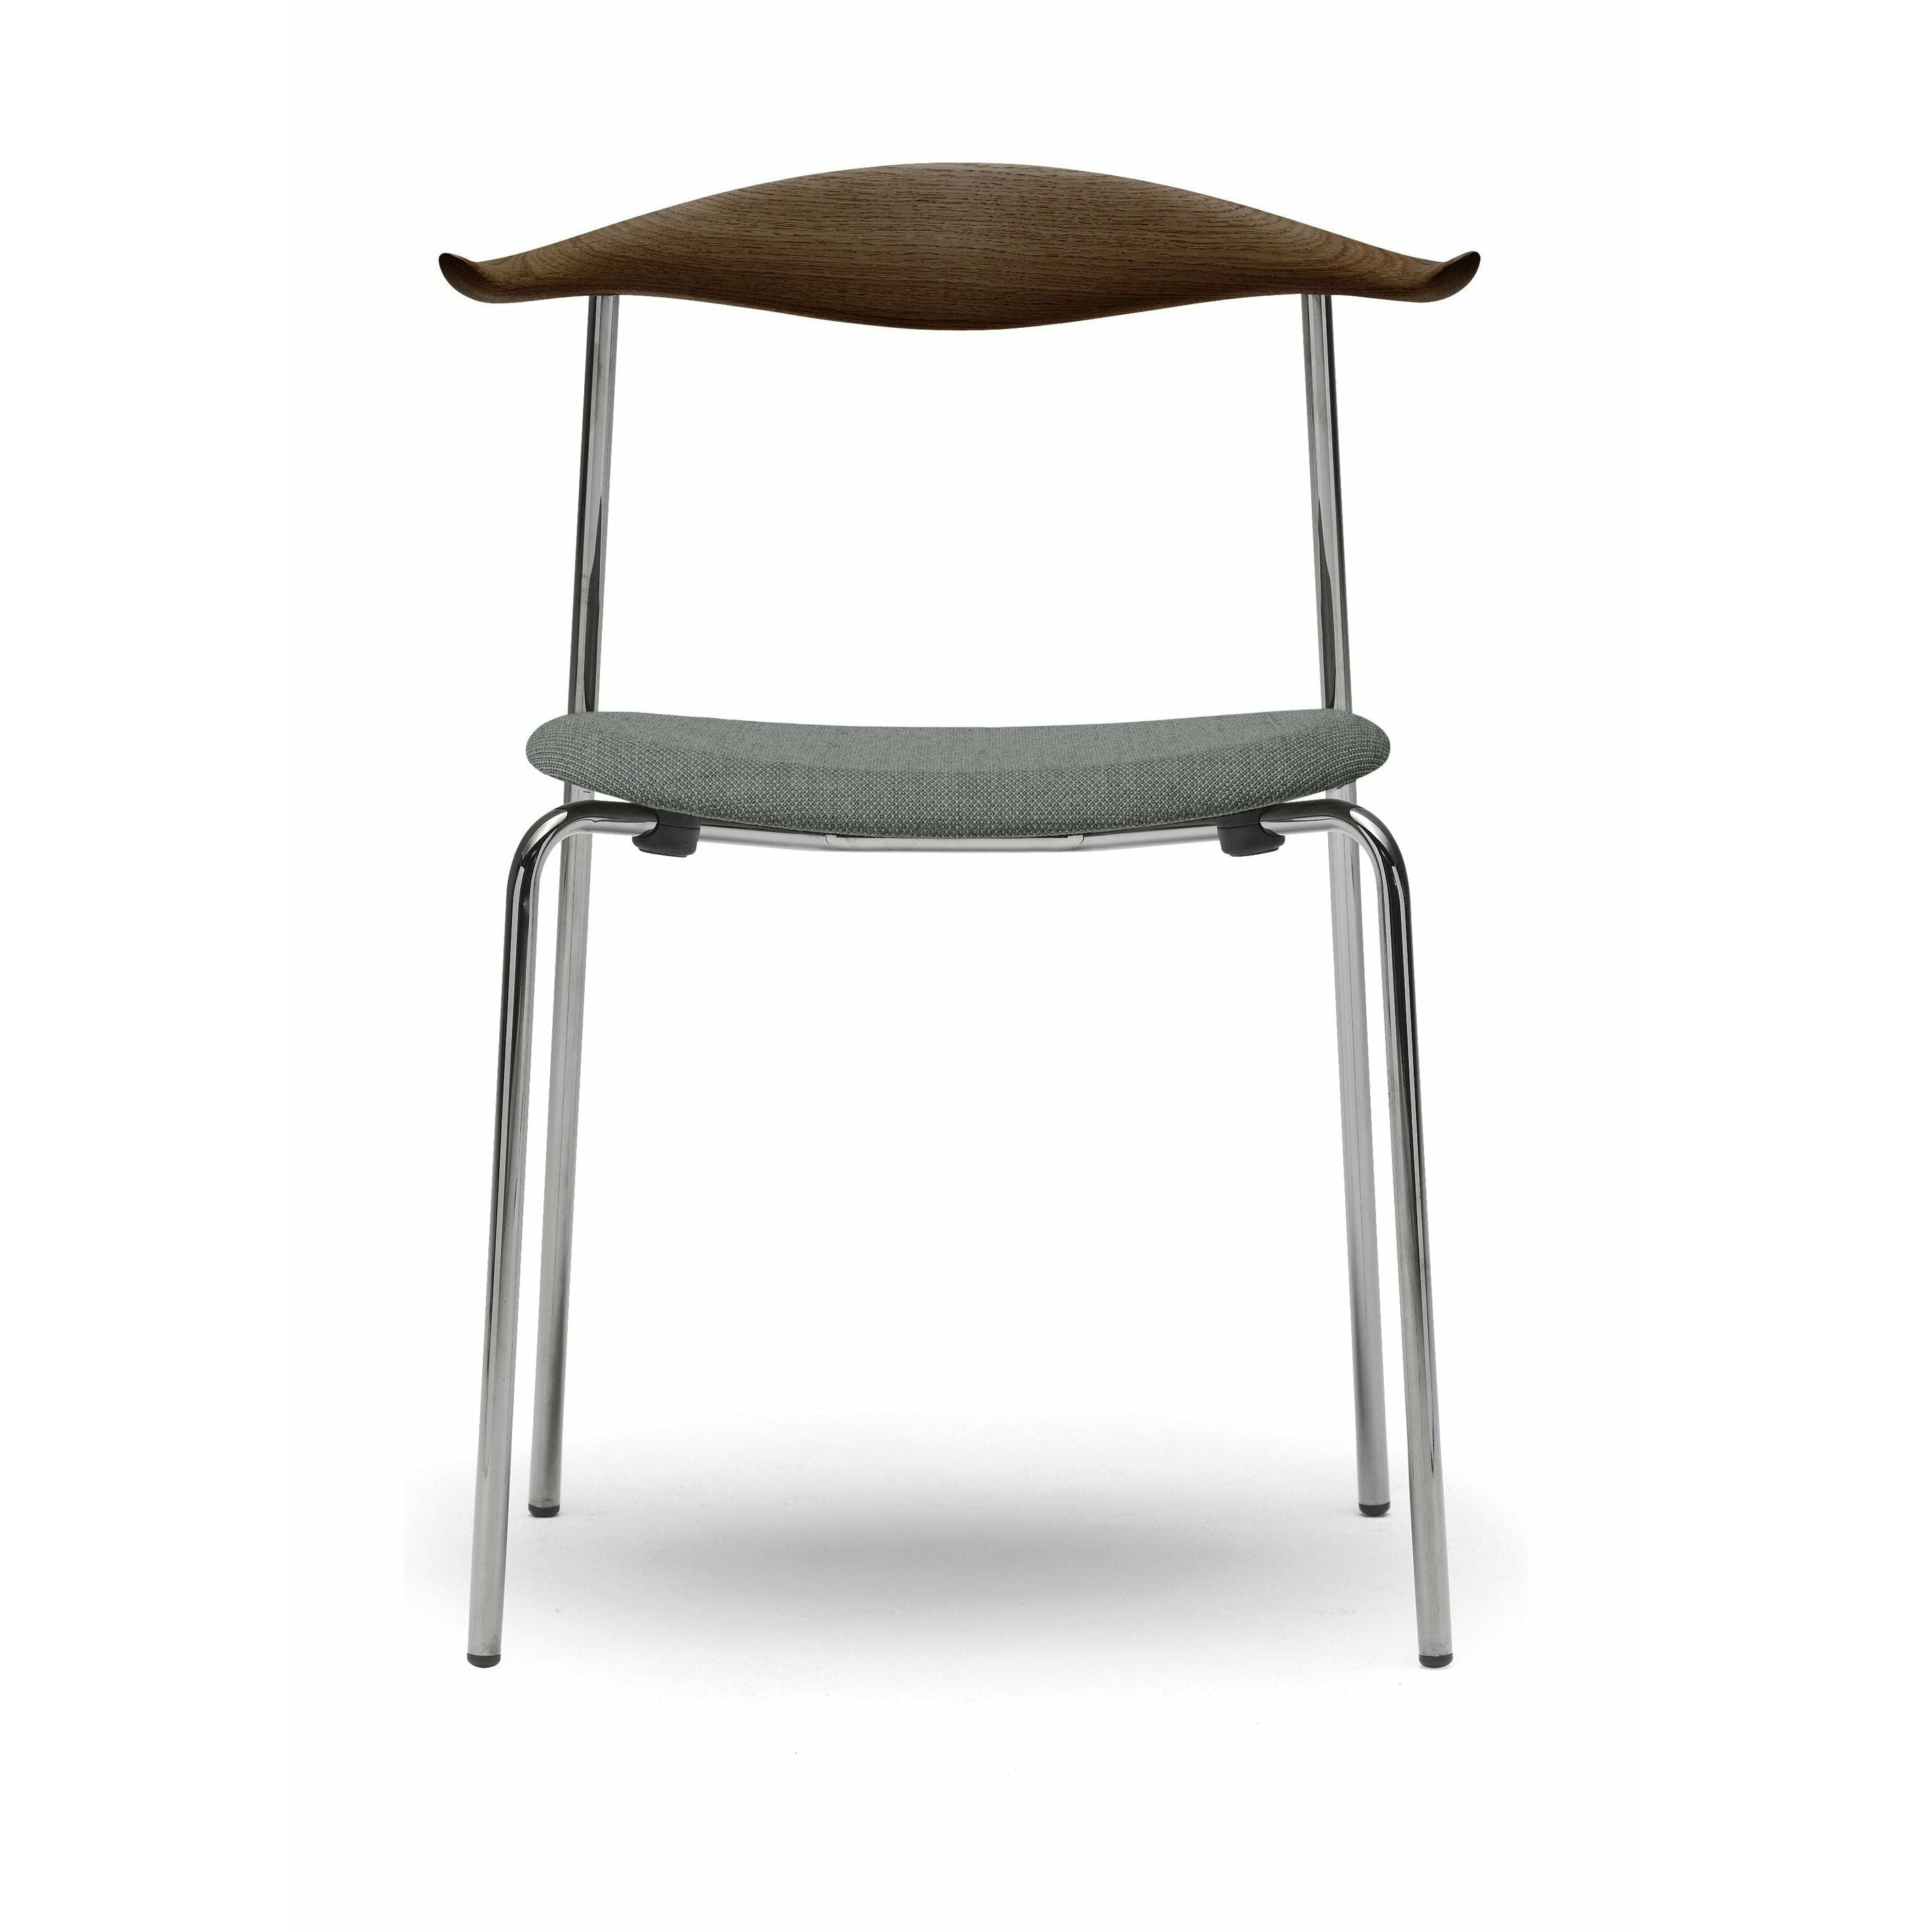 Carl Hansen CH88 P stoel, eiken rookolie/fiord 151